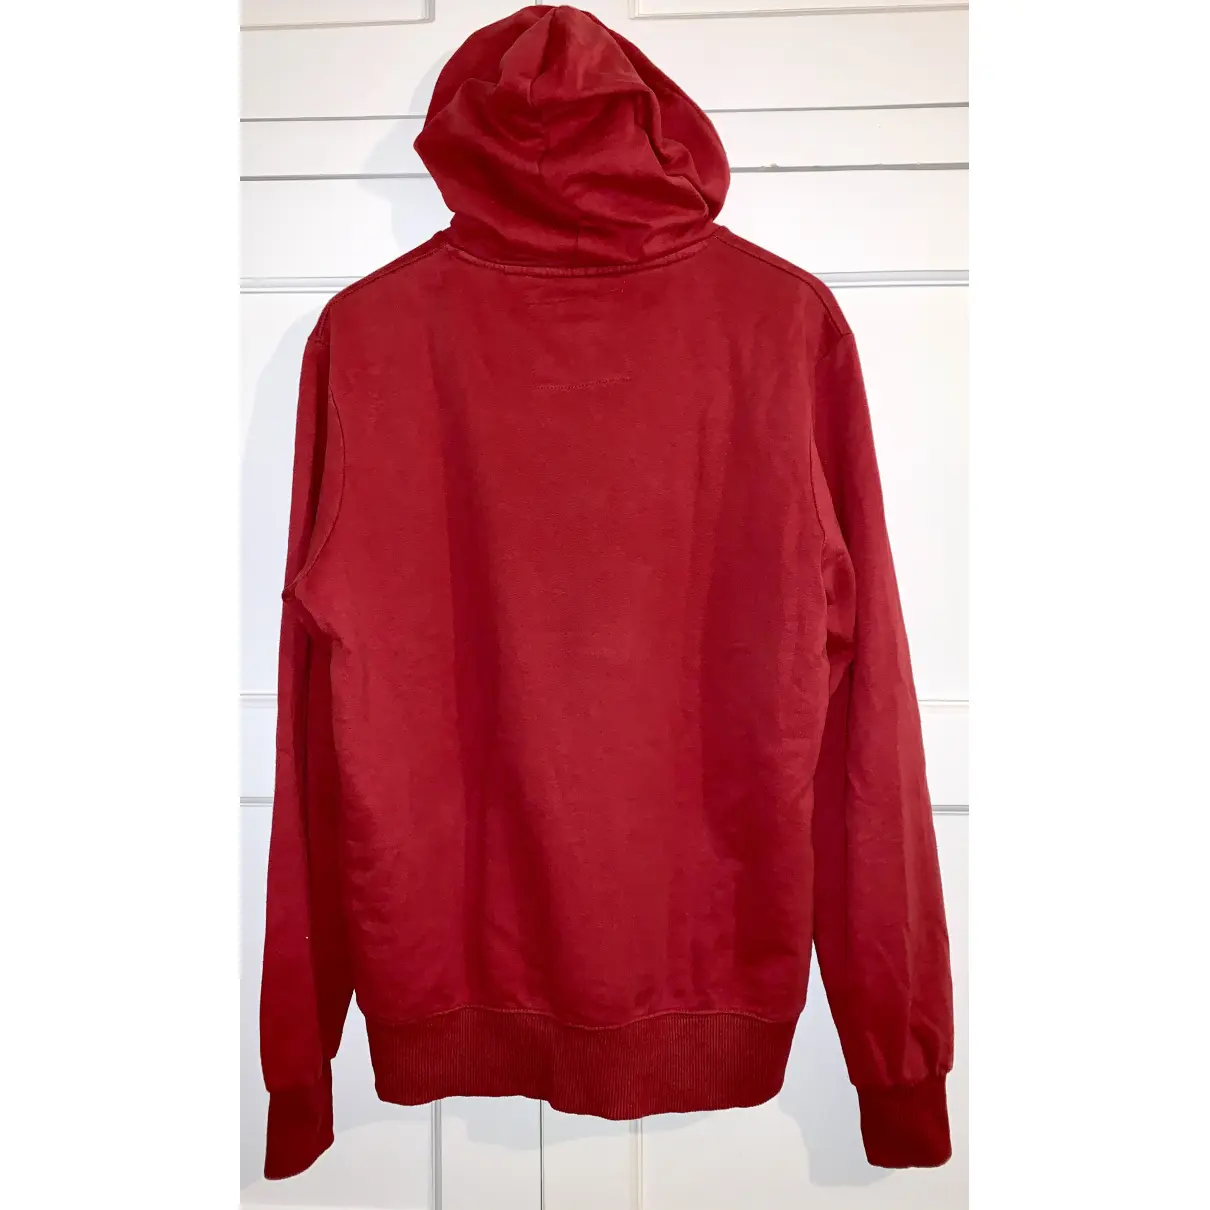 Buy PULL & BEAR Red Cotton Knitwear & Sweatshirt online